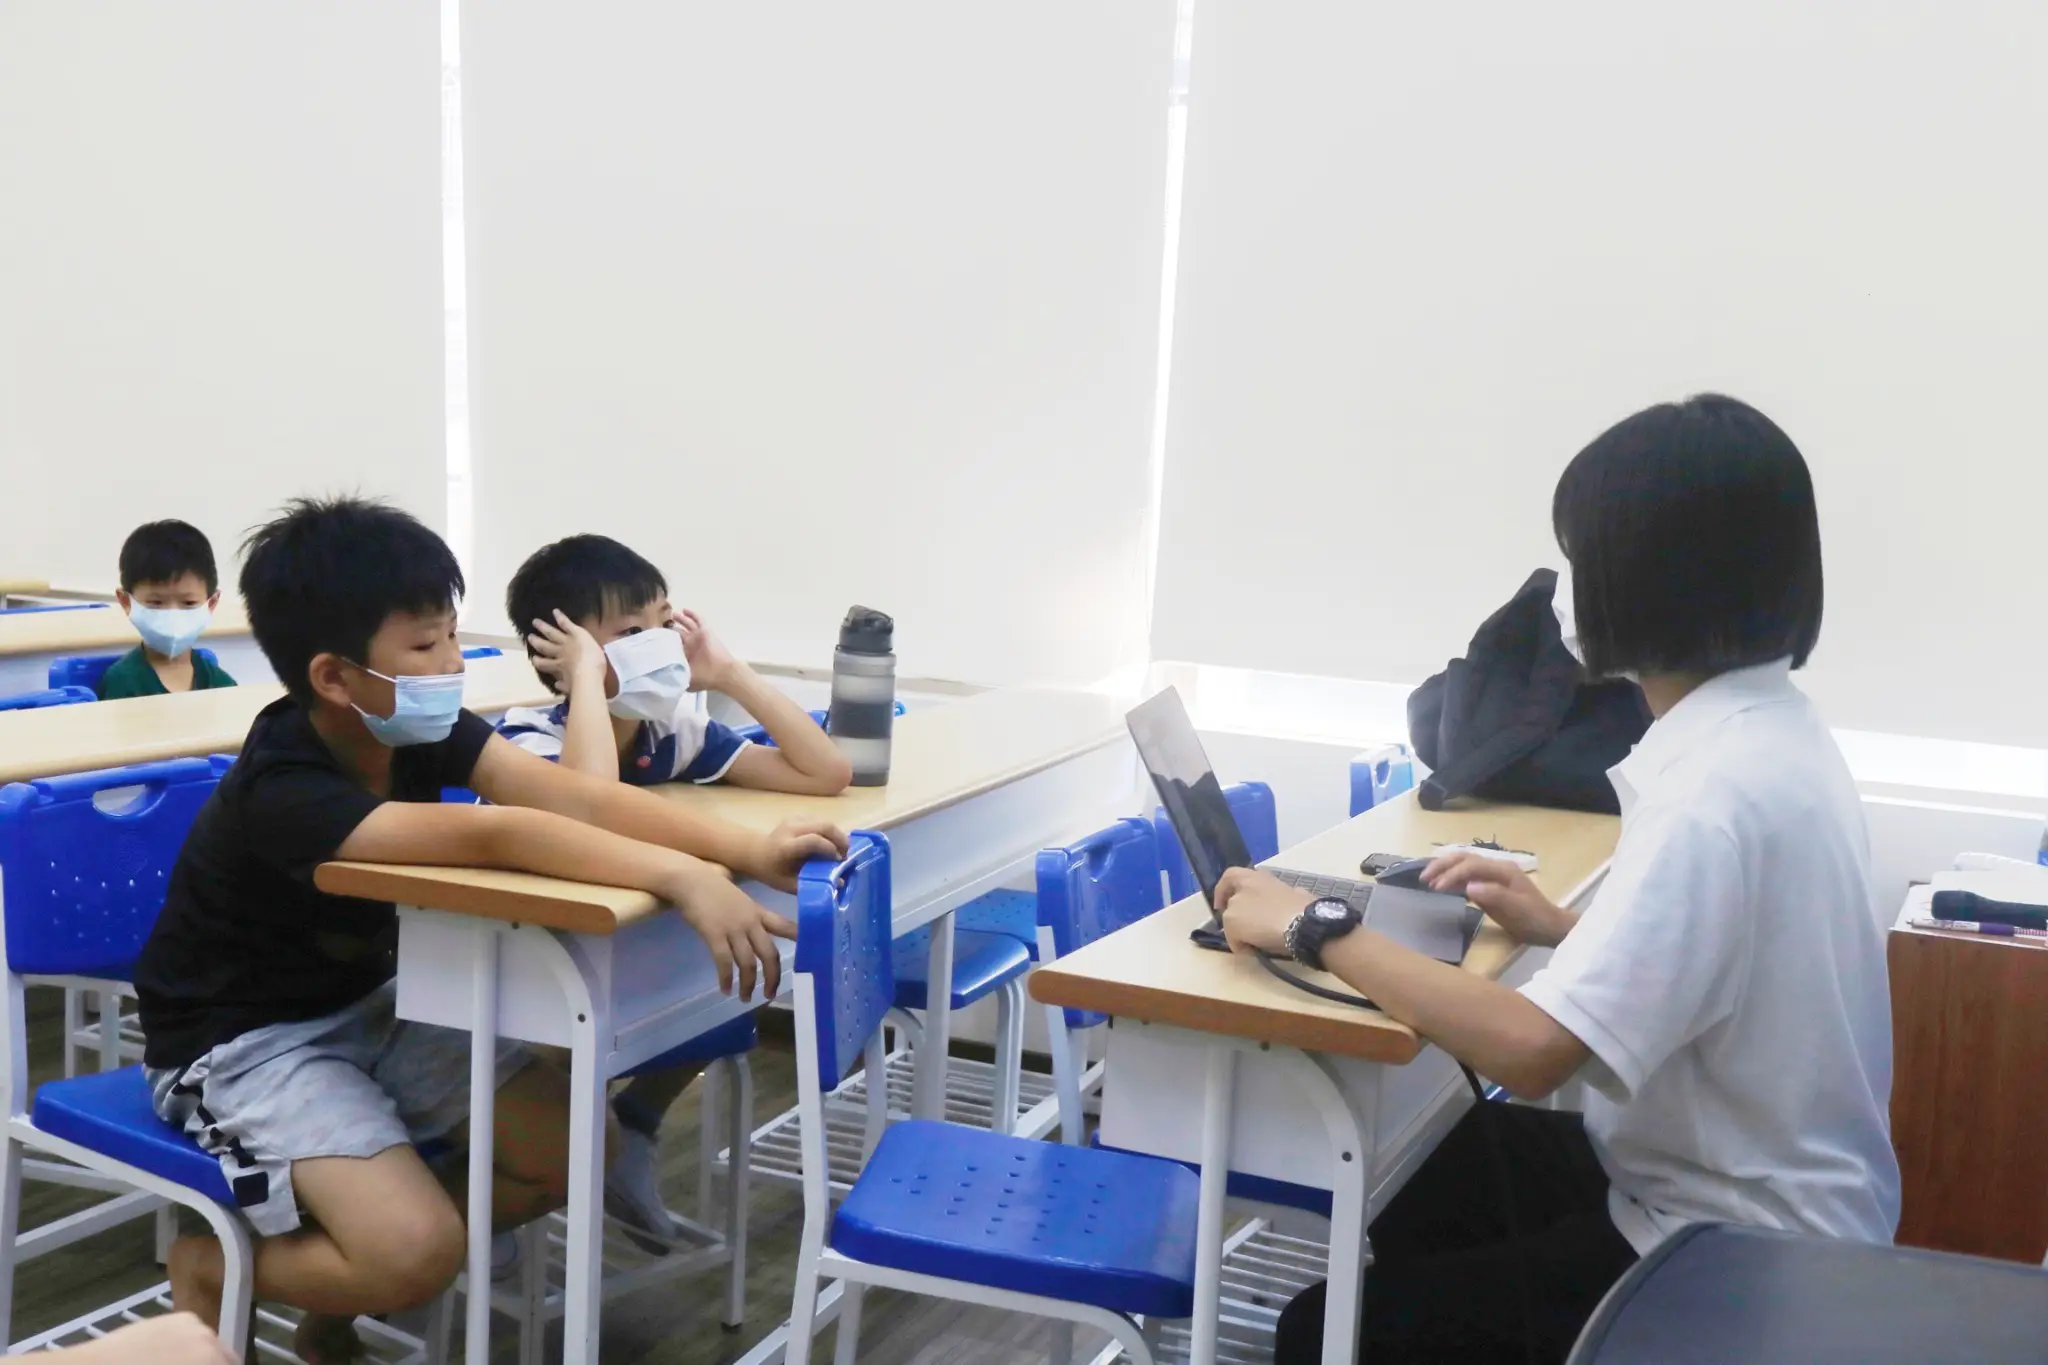 兩位男同學正坐在老師的對面。